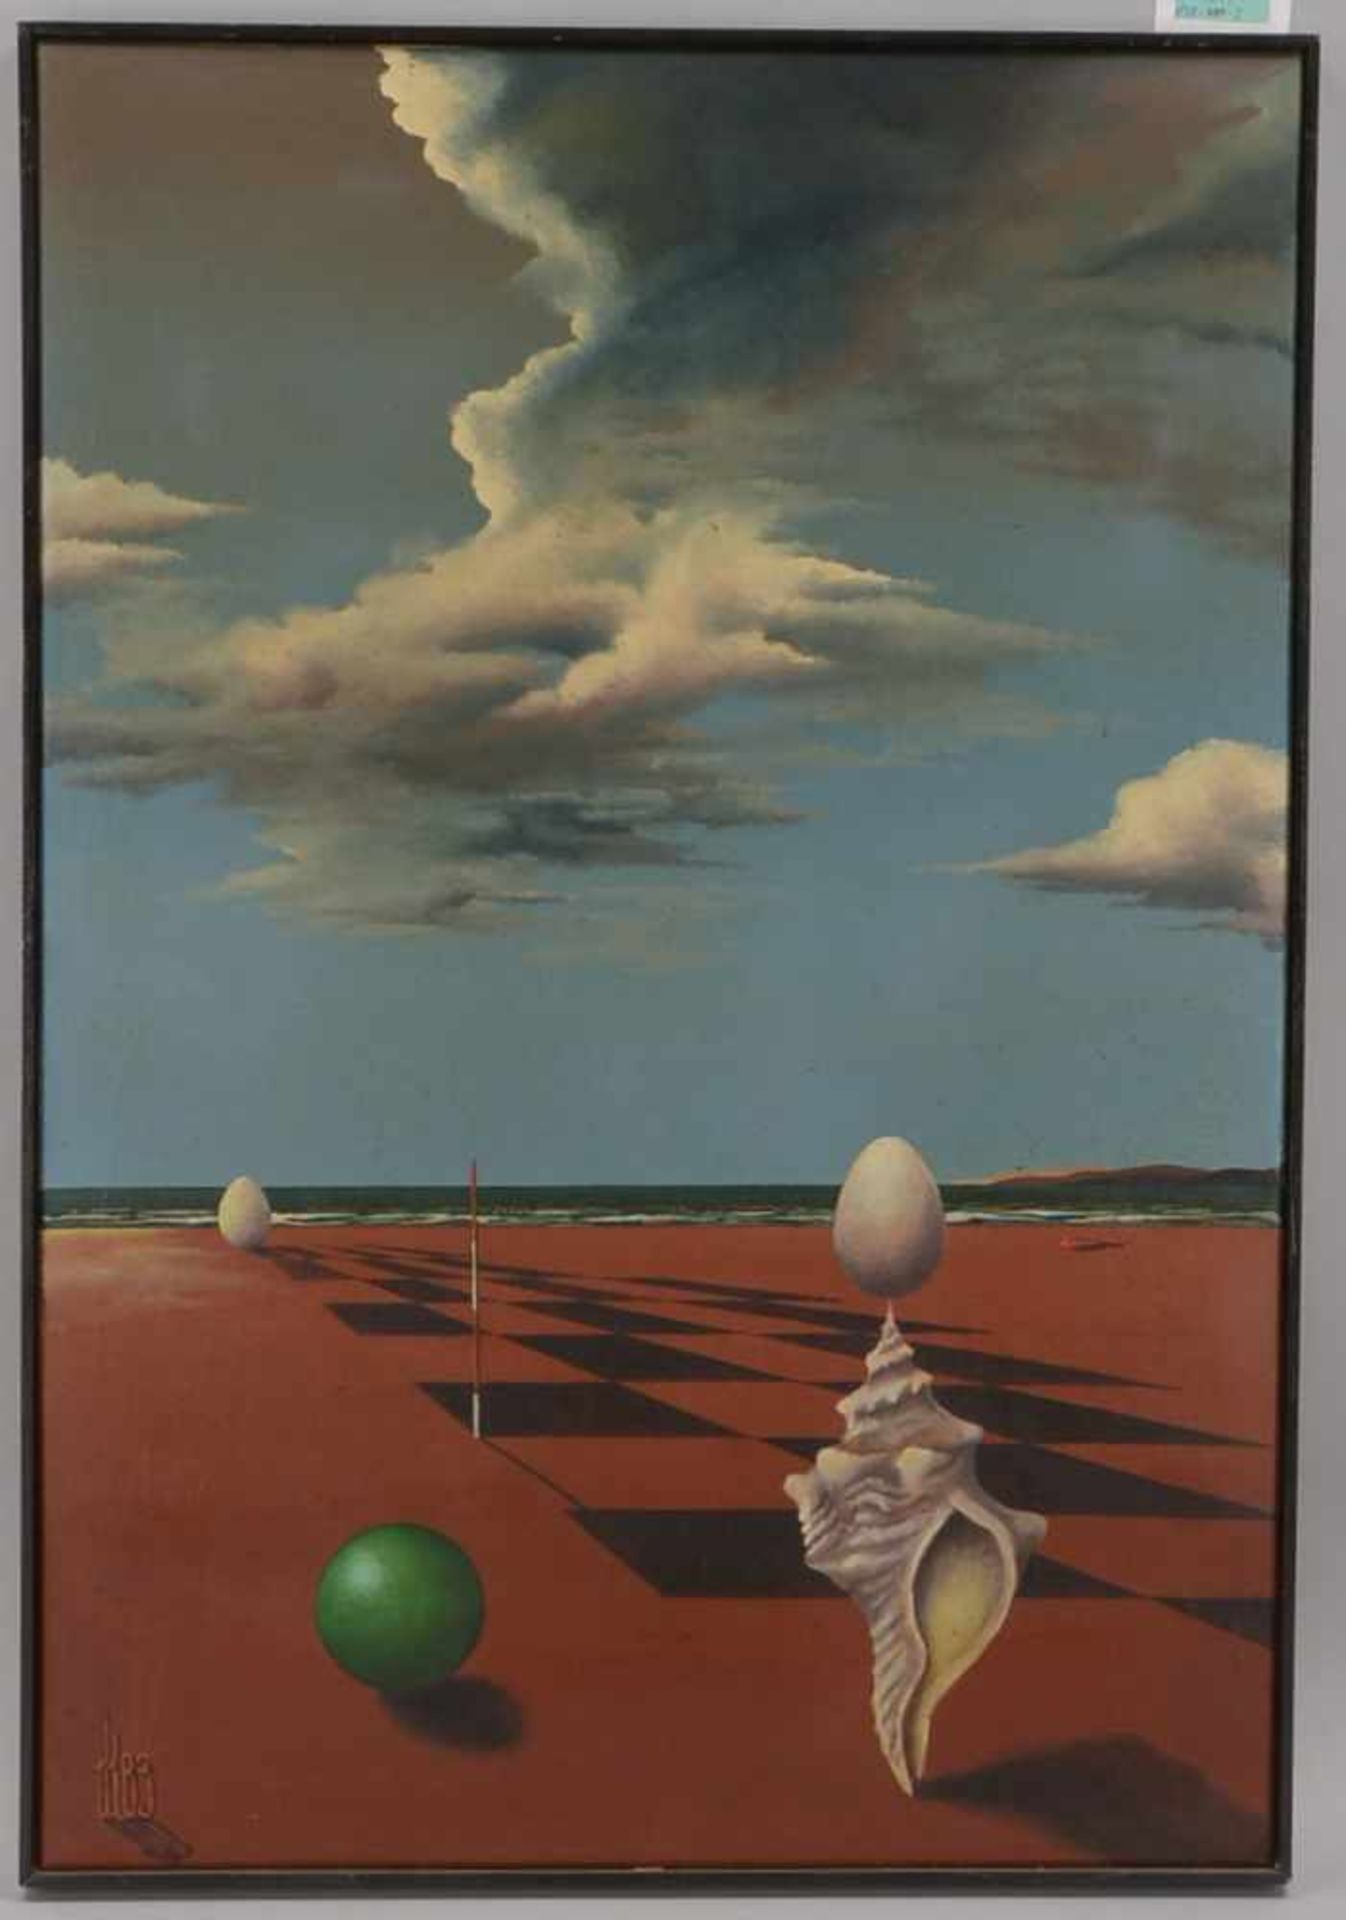 Monogrammist, 'Surrealistische Landschaft mit Schnecke', Öl/Lw, unten links monogrammiert und